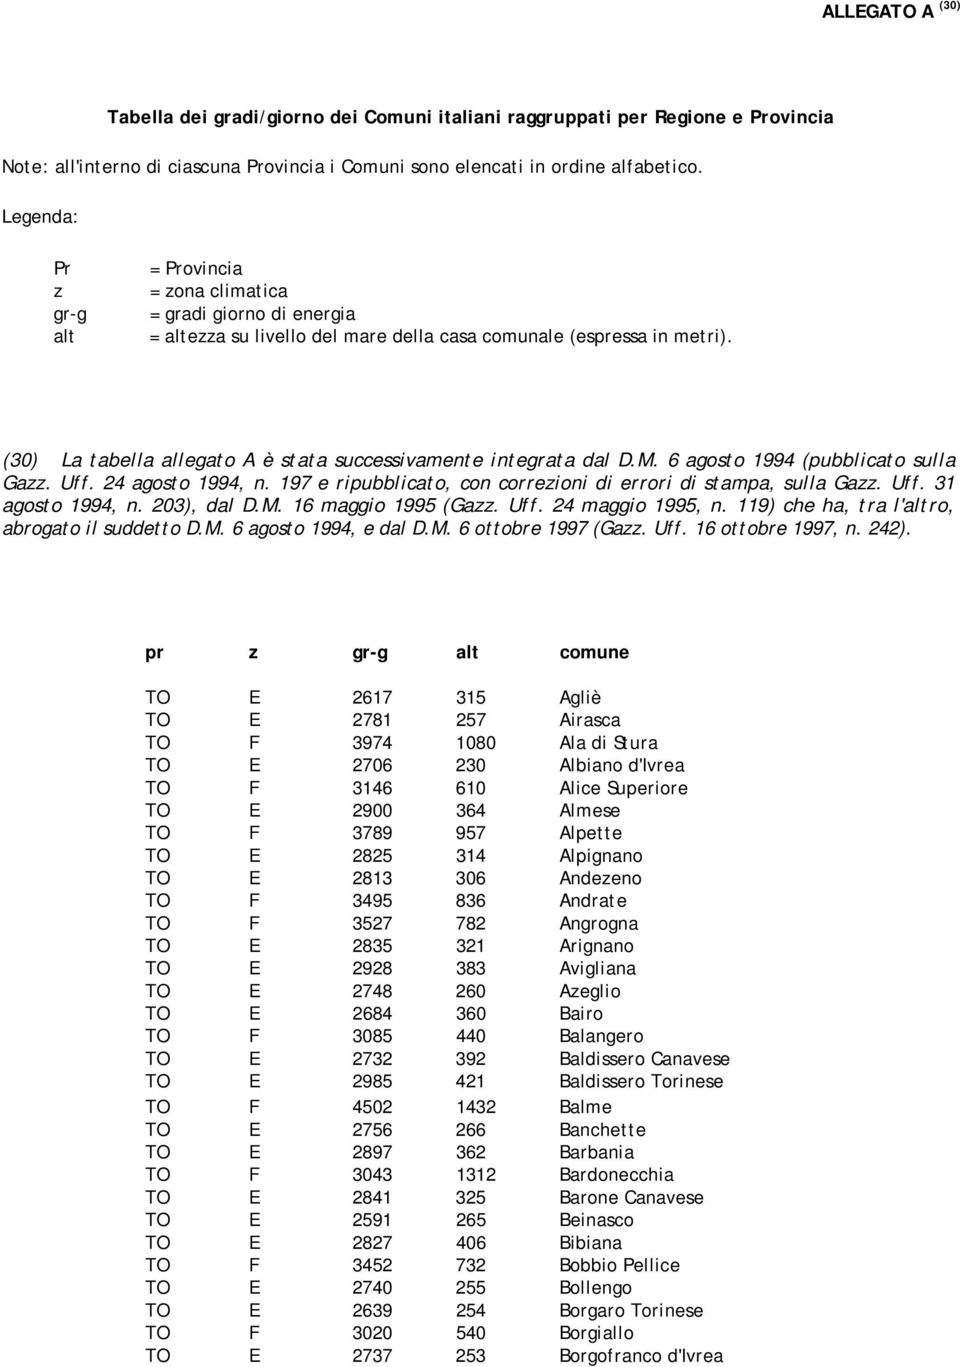 (30) La tabella allegato A è stata successivamente integrata dal D.M. 6 agosto 1994 (pubblicato sulla Gazz. Uff. 24 agosto 1994, n. 197 e ripubblicato, con correzioni di errori di stampa, sulla Gazz.